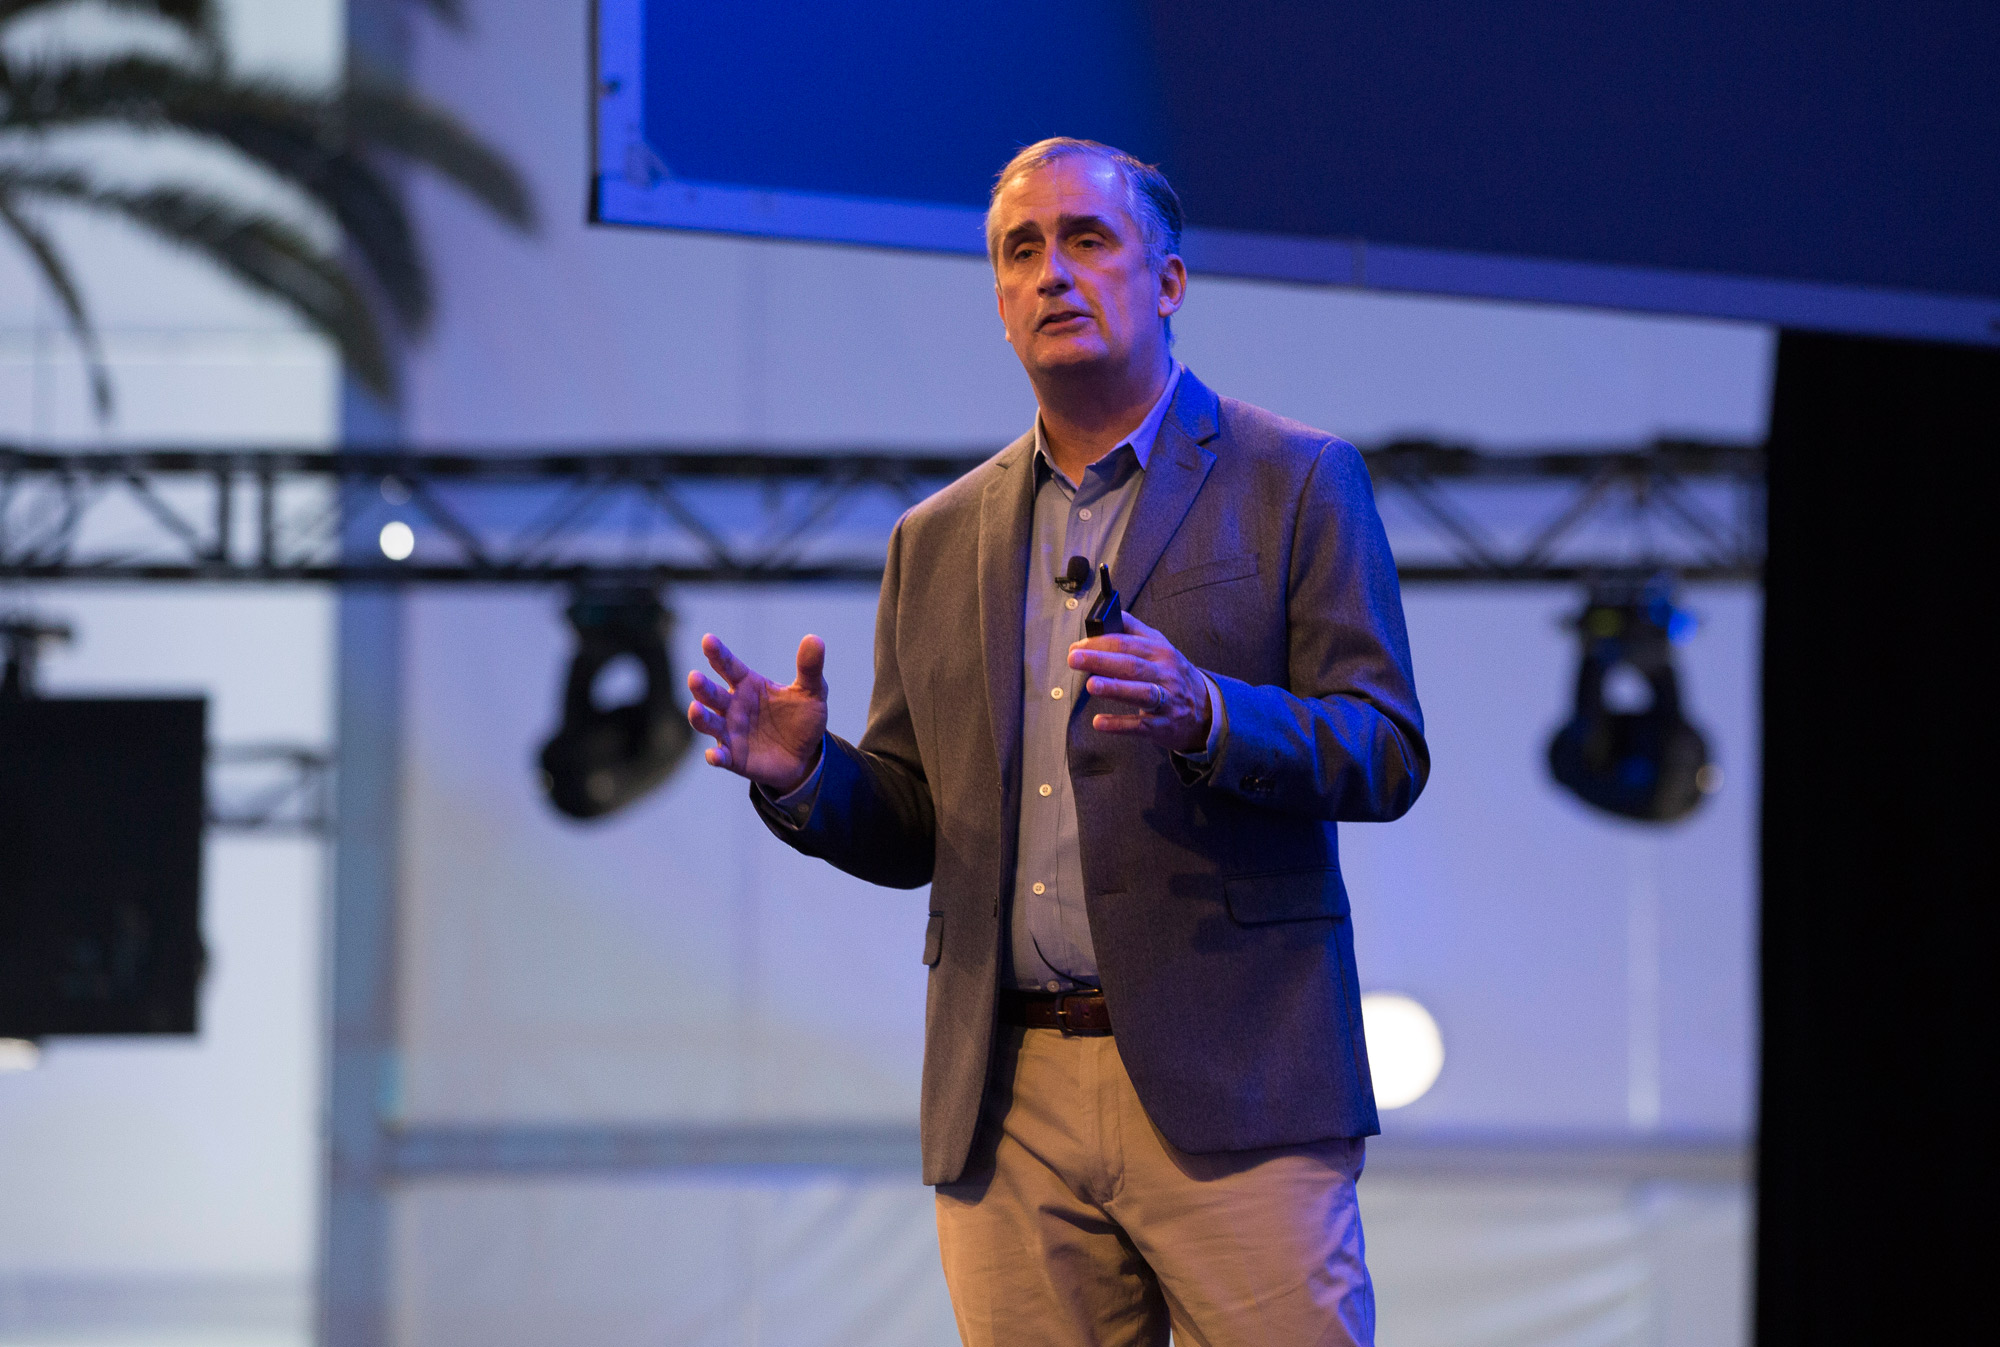 Brian Krzanich Intel CEO